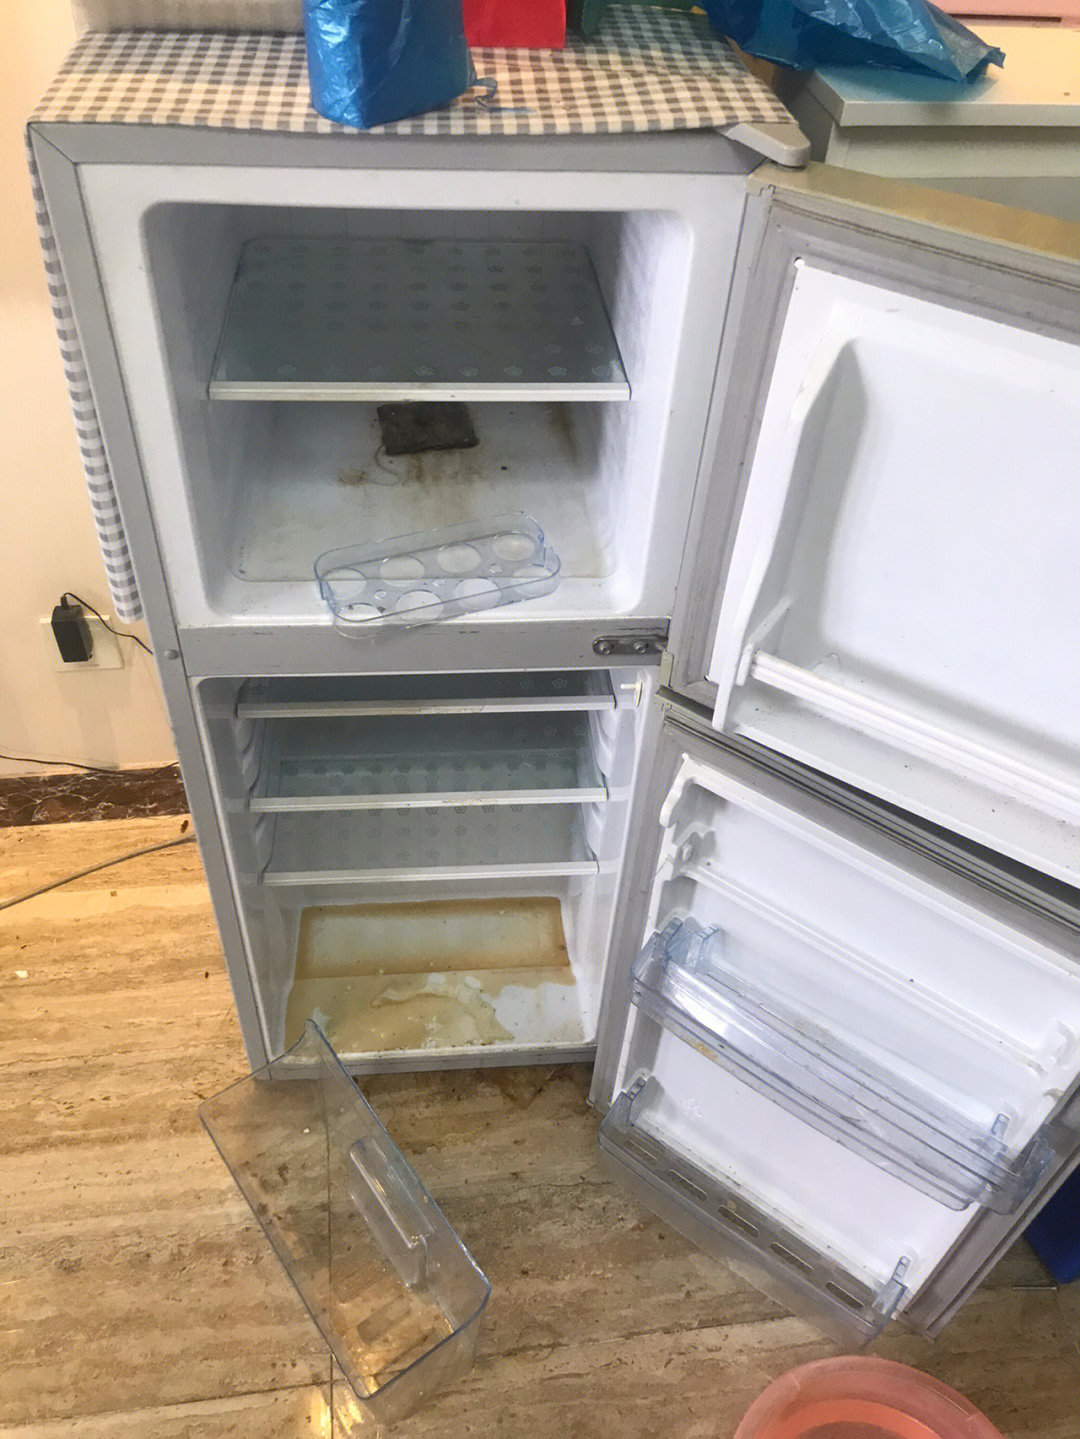 冰箱整理前后照片图片